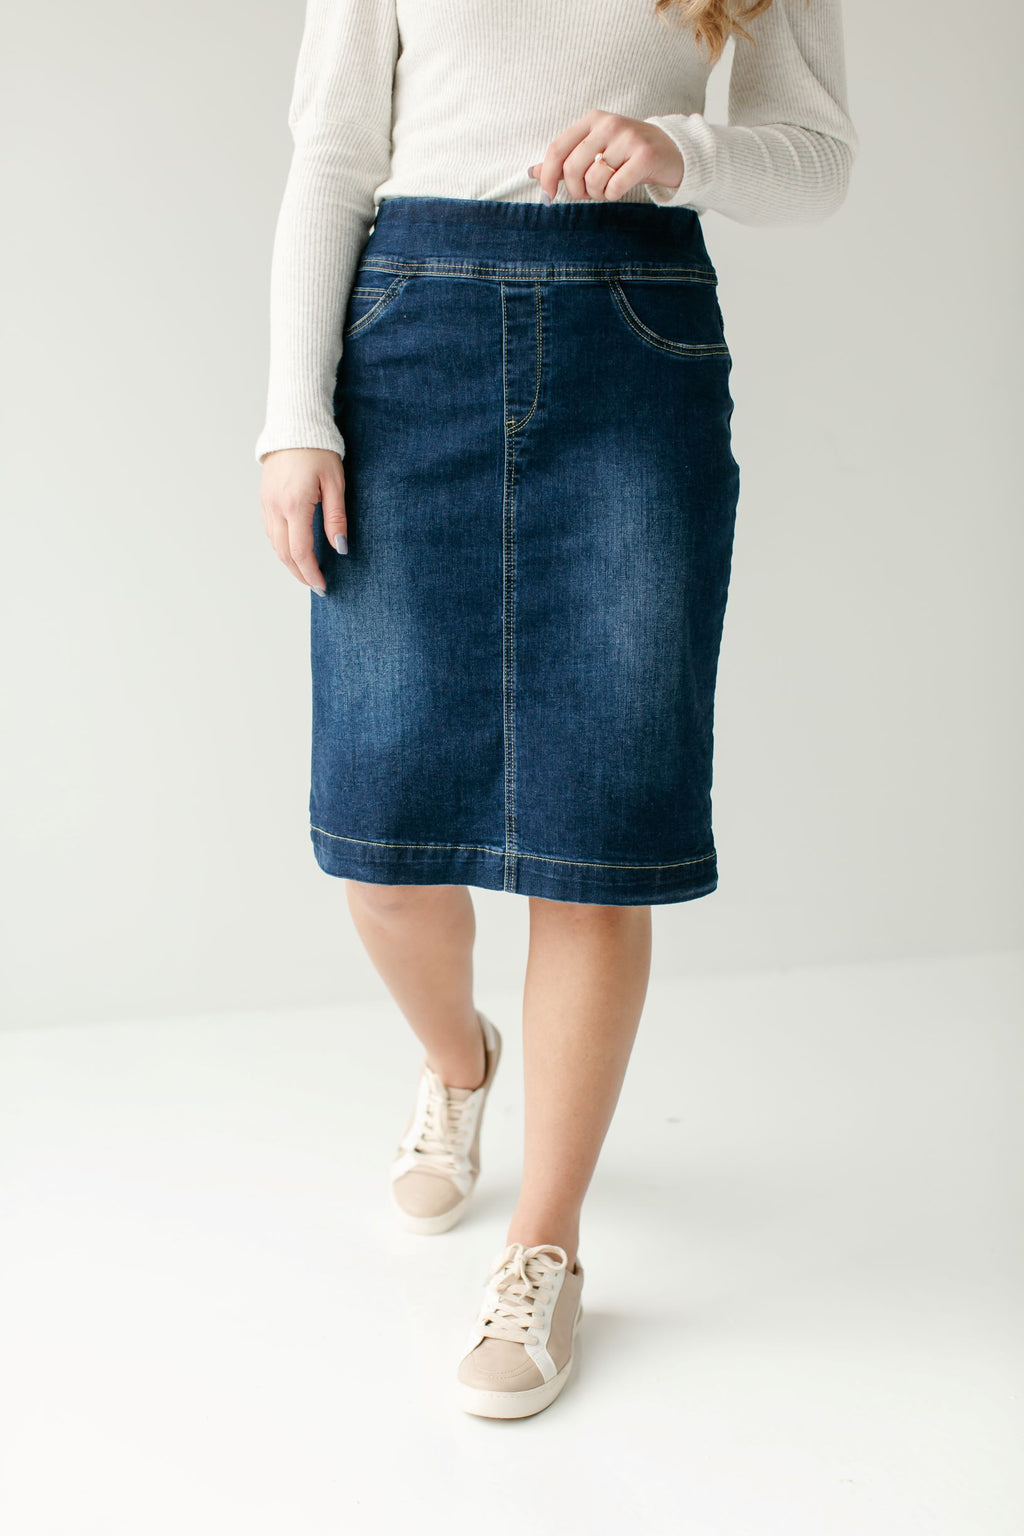 'Sara' Classic Knee Length Dark Denim Skirt